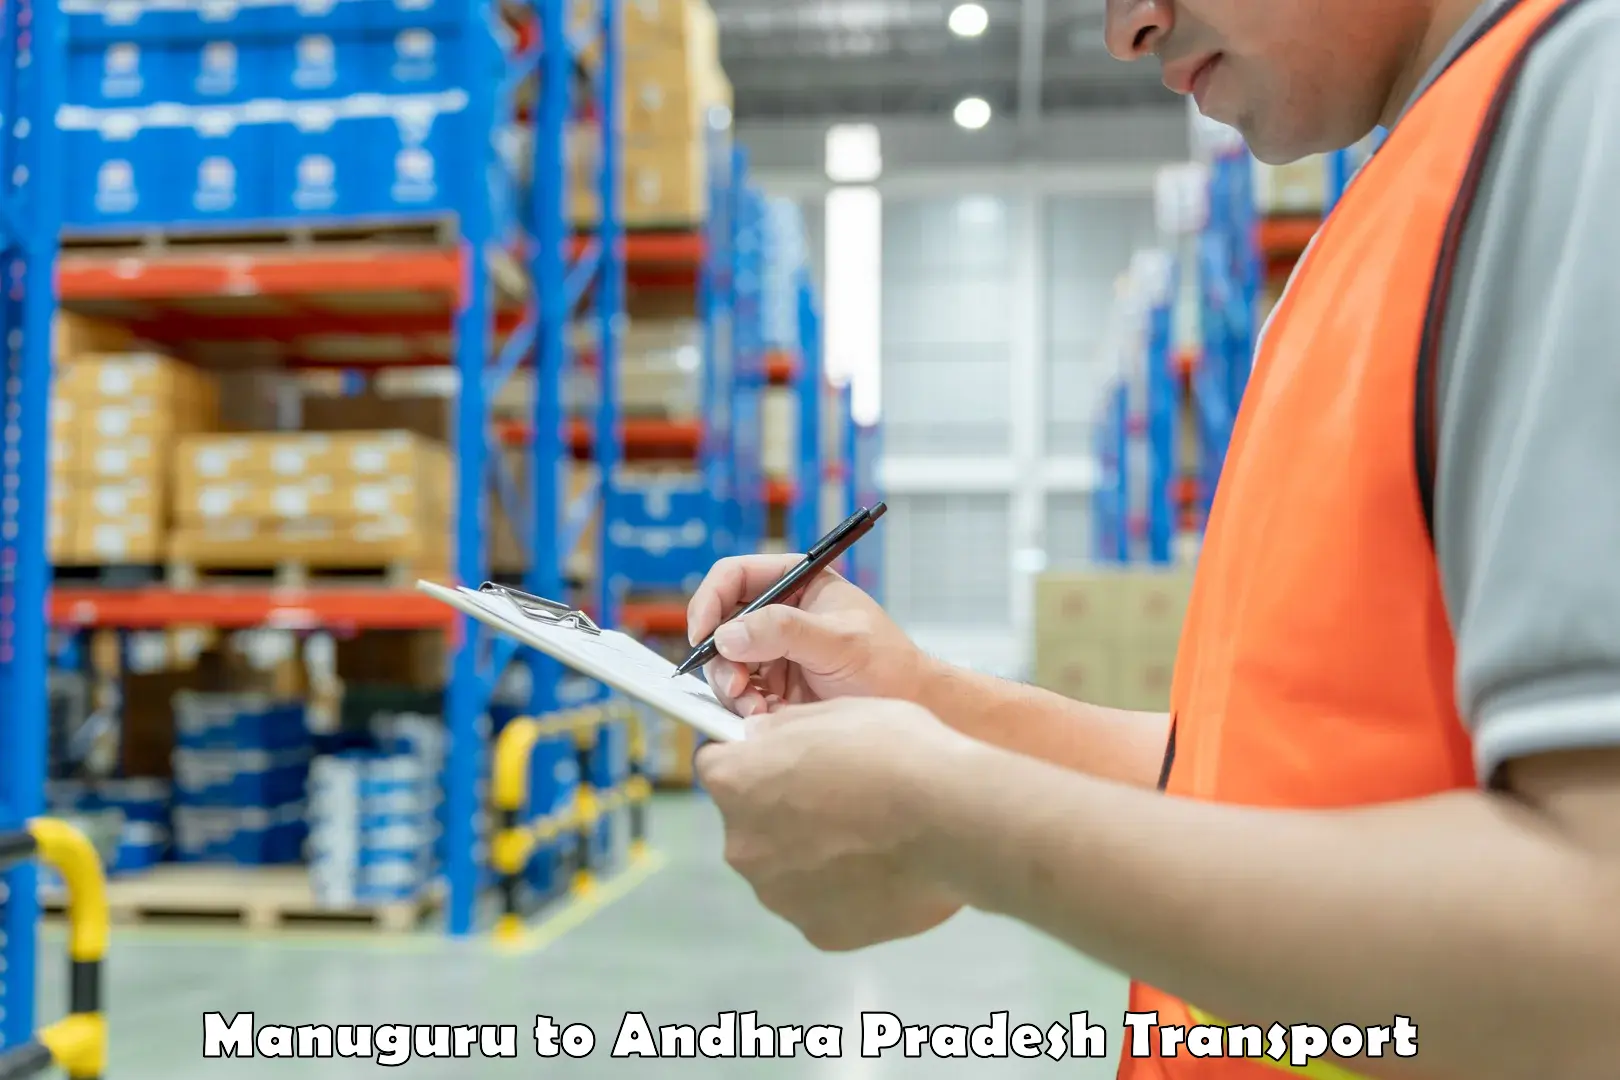 Truck transport companies in India Manuguru to Andhra Pradesh